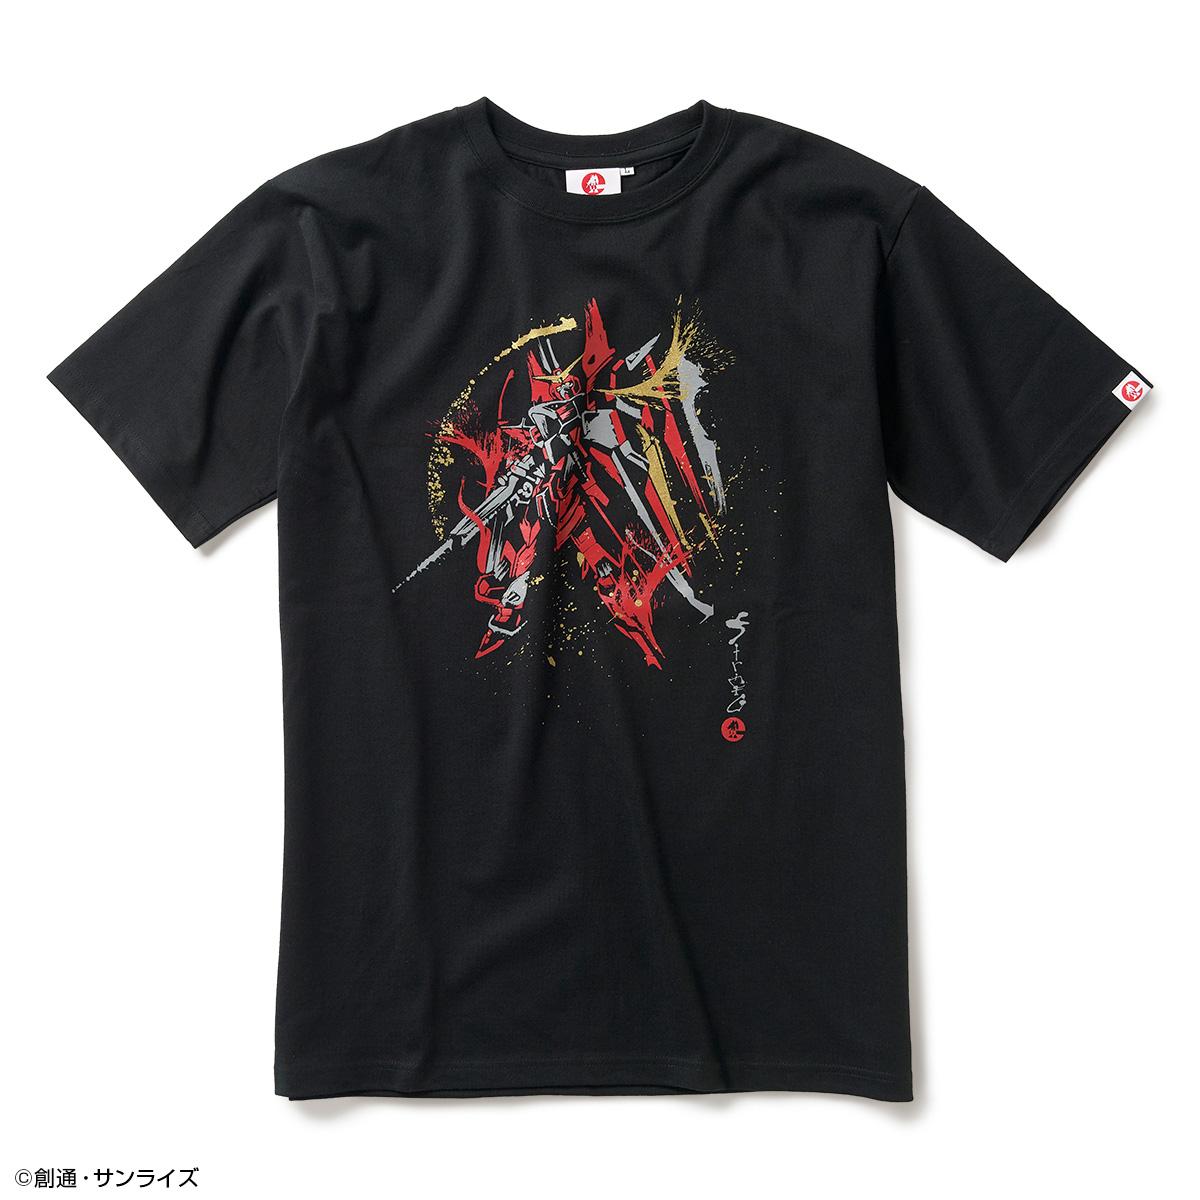 STRICT-G JAPANより、『機動戦士ガンダムSEED』 フリーダムガンダム・ジャスティスガンダムの筆絵風Tシャツが登場!